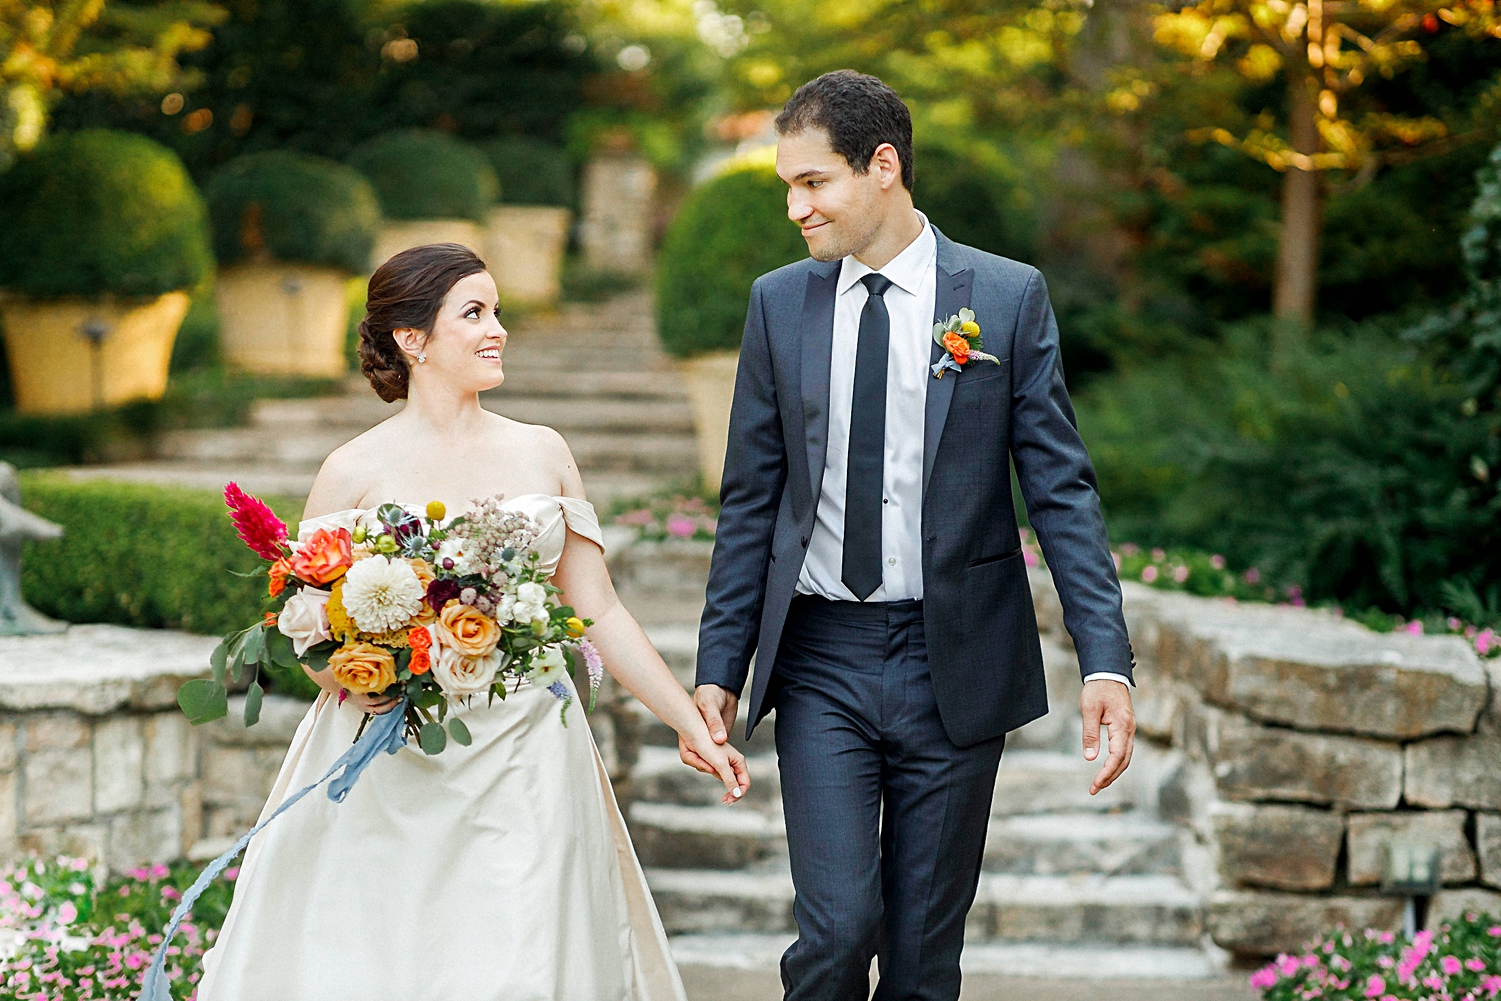 bride and groom Dallas arboretum colorful wedding Garden bouquet walking